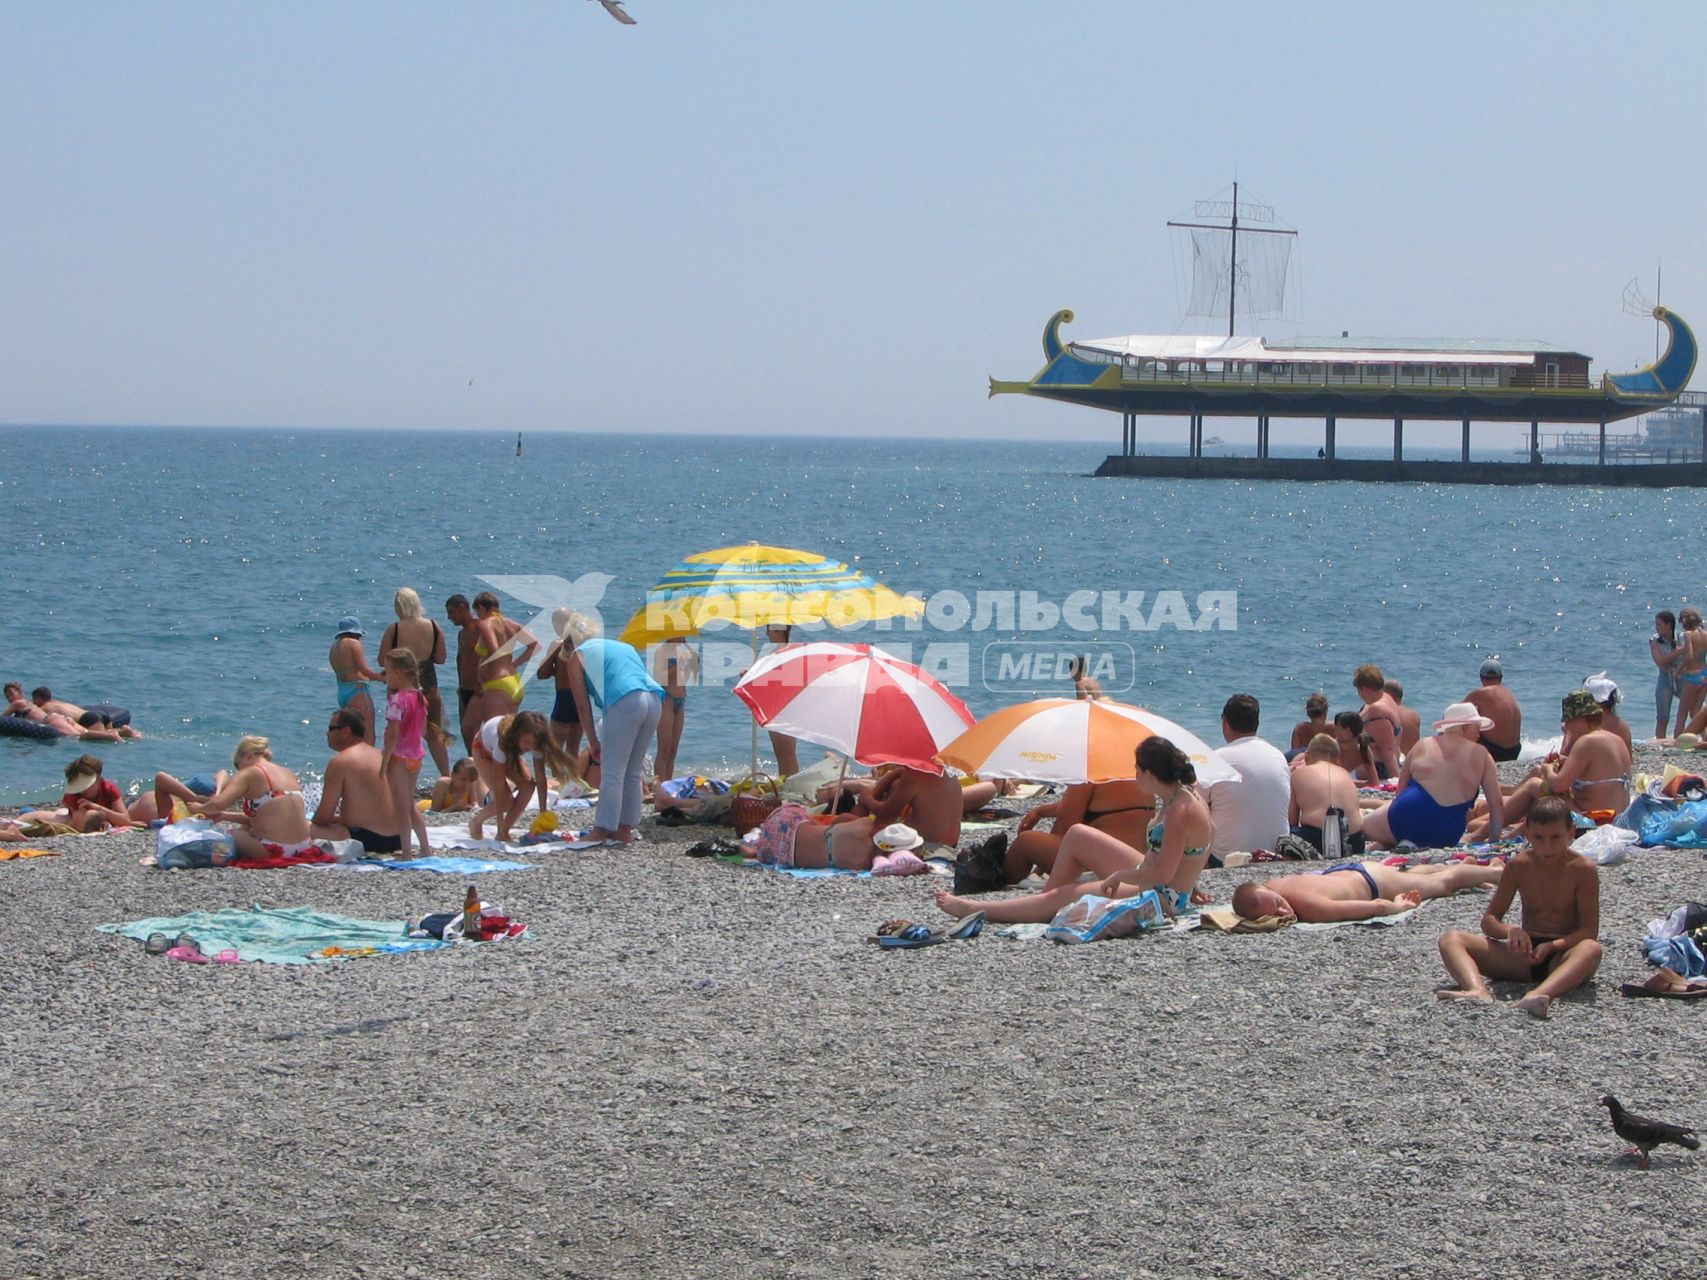 Отдых в Крыму. На снимке: отдыхающие на пляже.